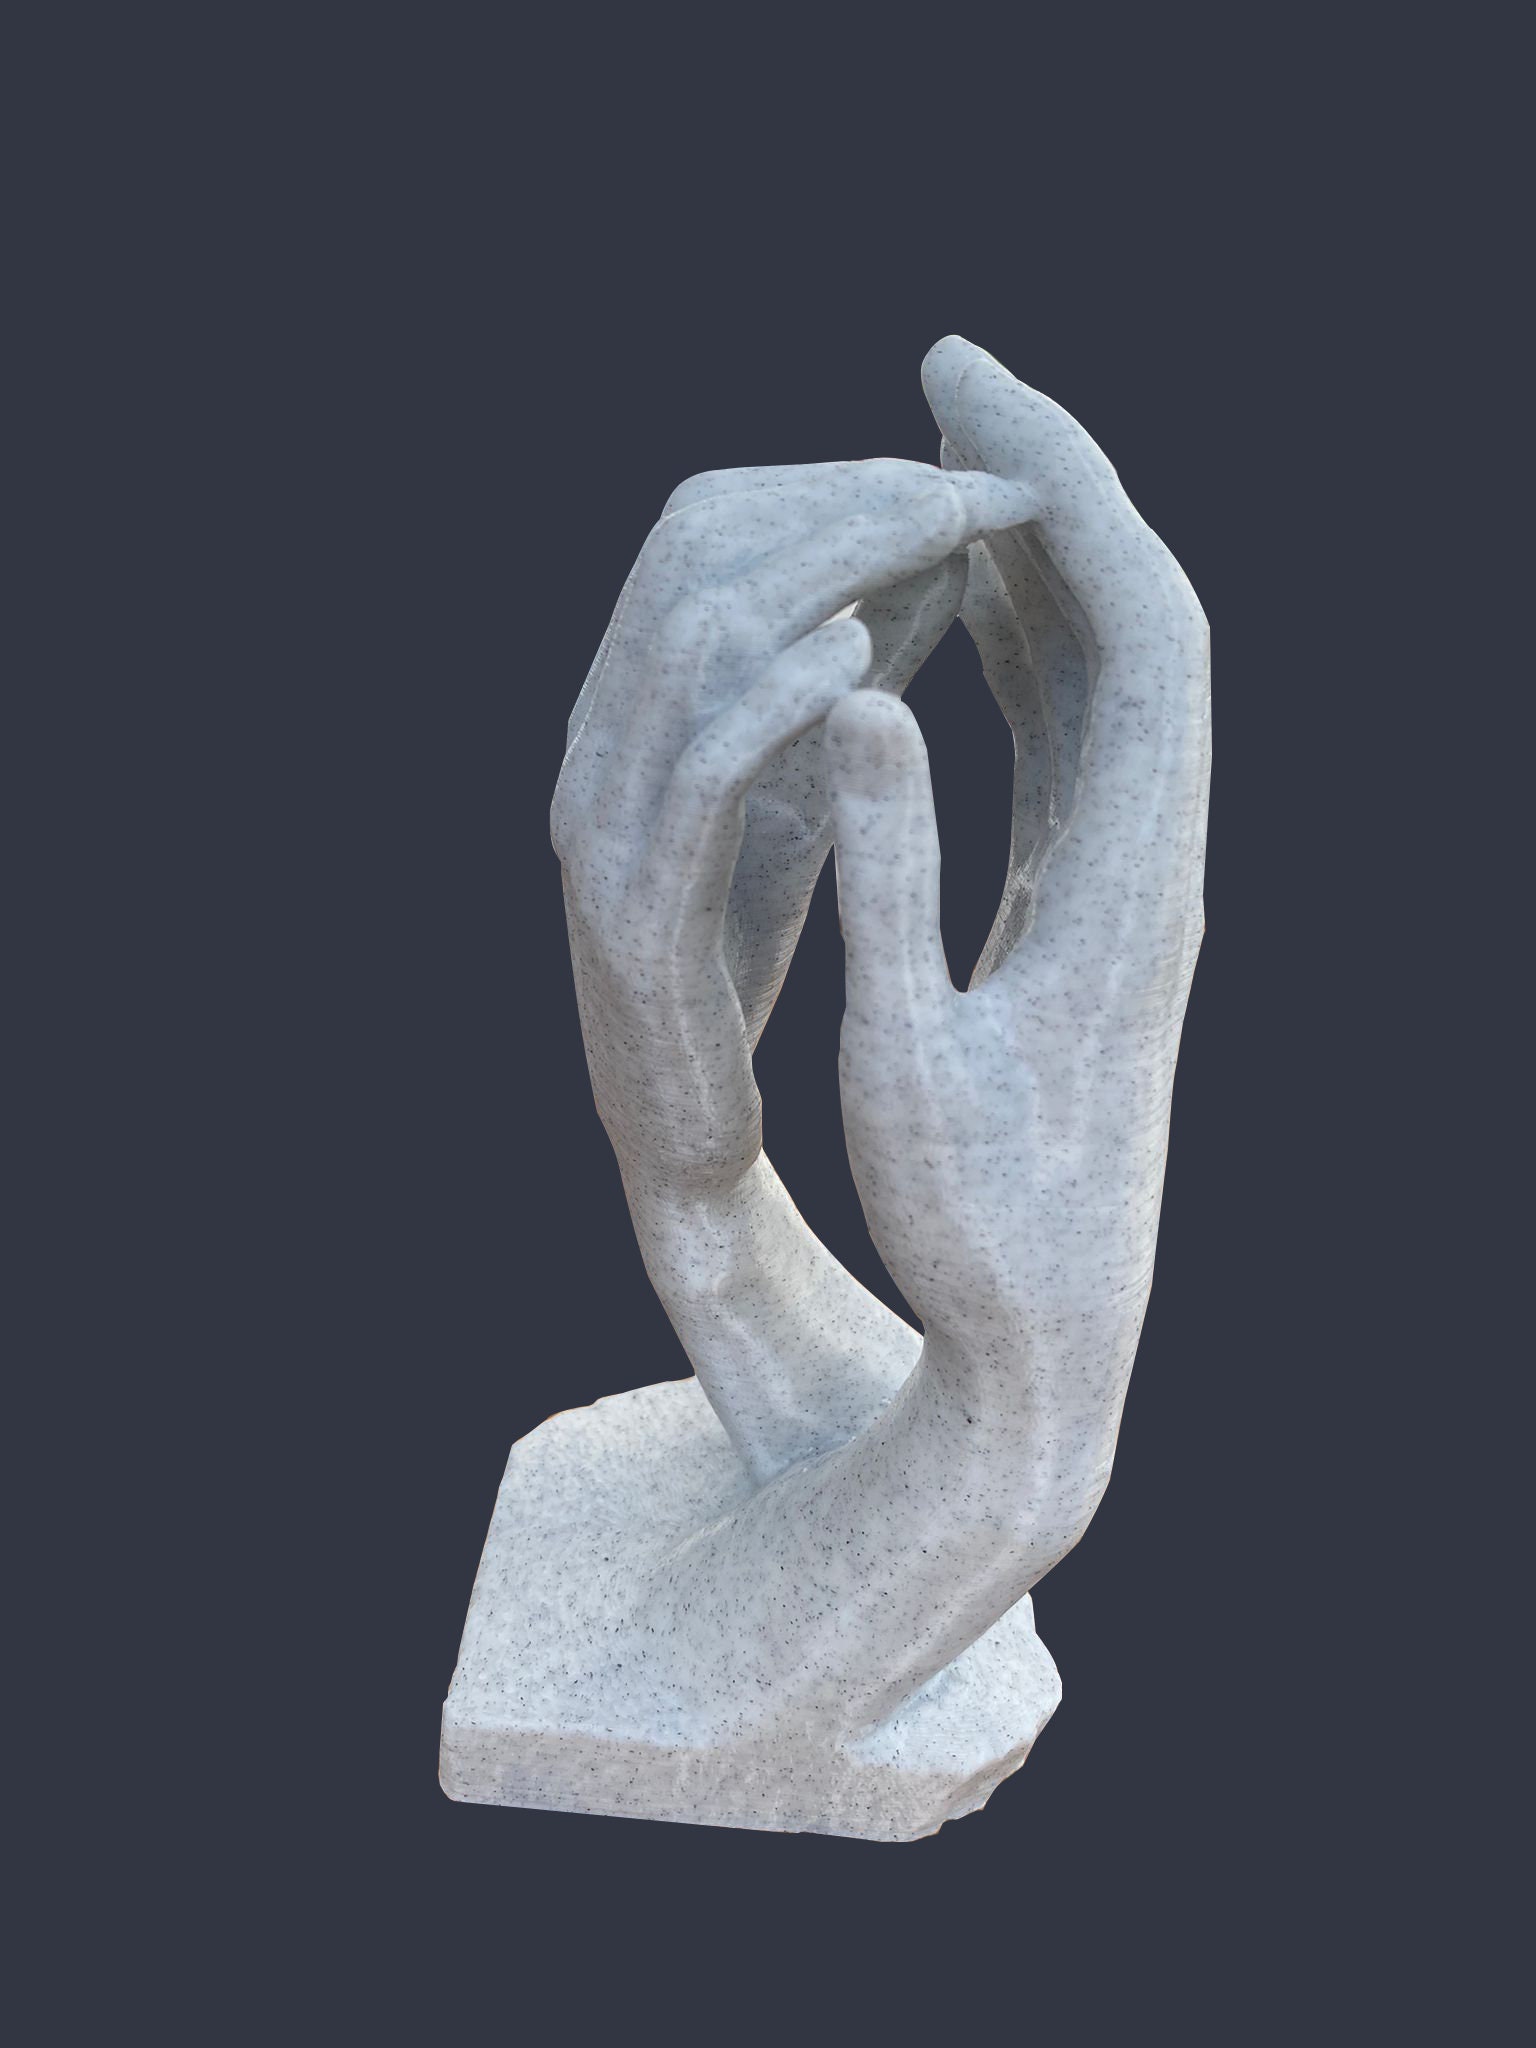 Hand Sculpture Photograph